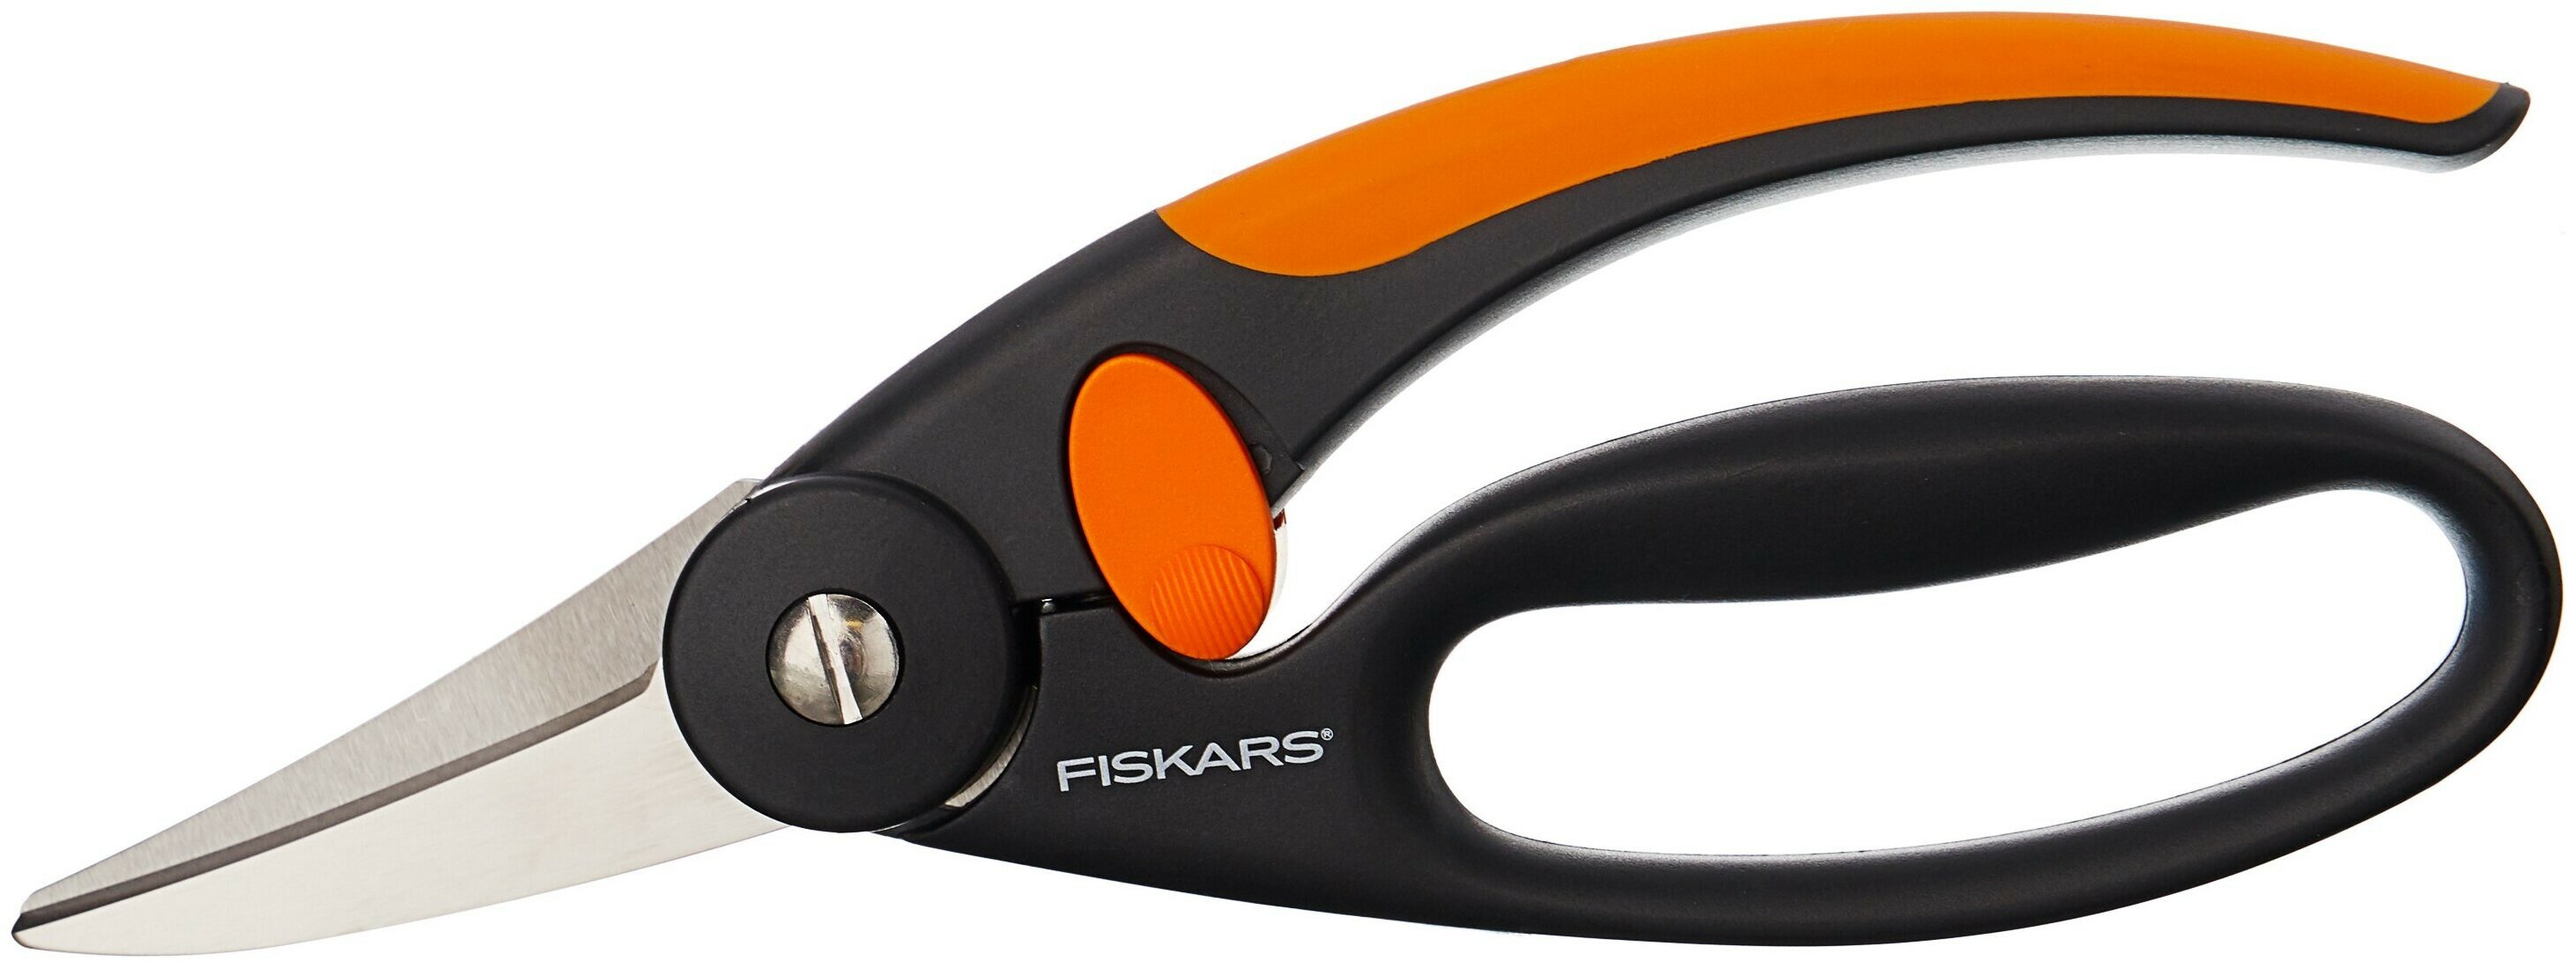 1001533 (111450) Универсальные ножницы (с петлей для пальцев) Fiskars - фото №1